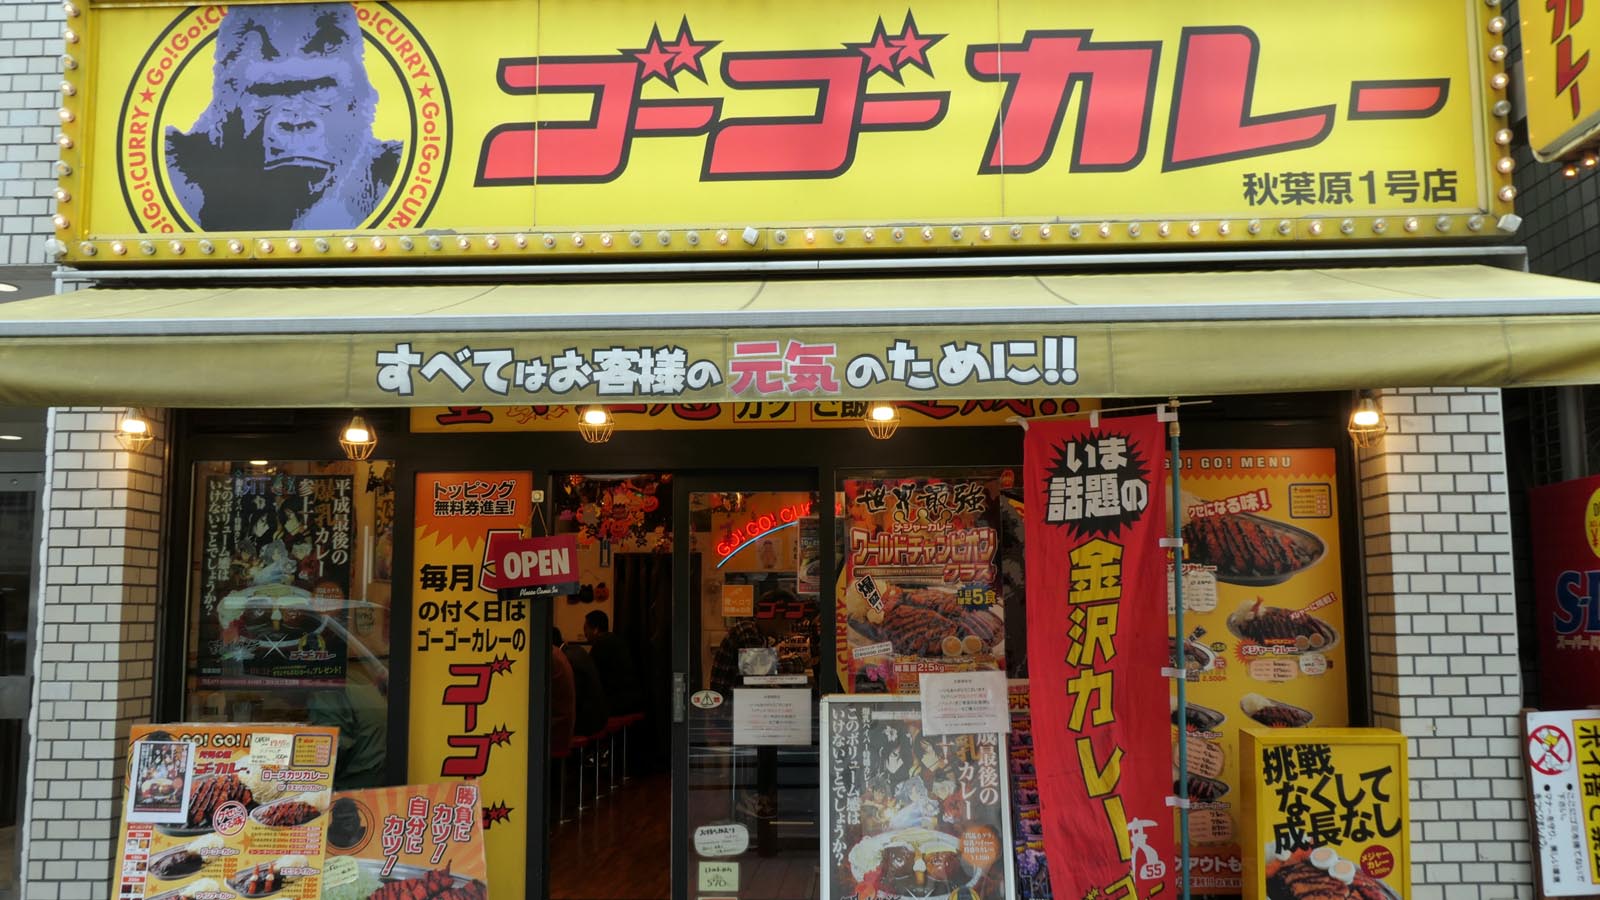 ゴーゴーカレーが奄美大島に店を構える理由 外食 東洋経済オンライン 社会をよくする経済ニュース